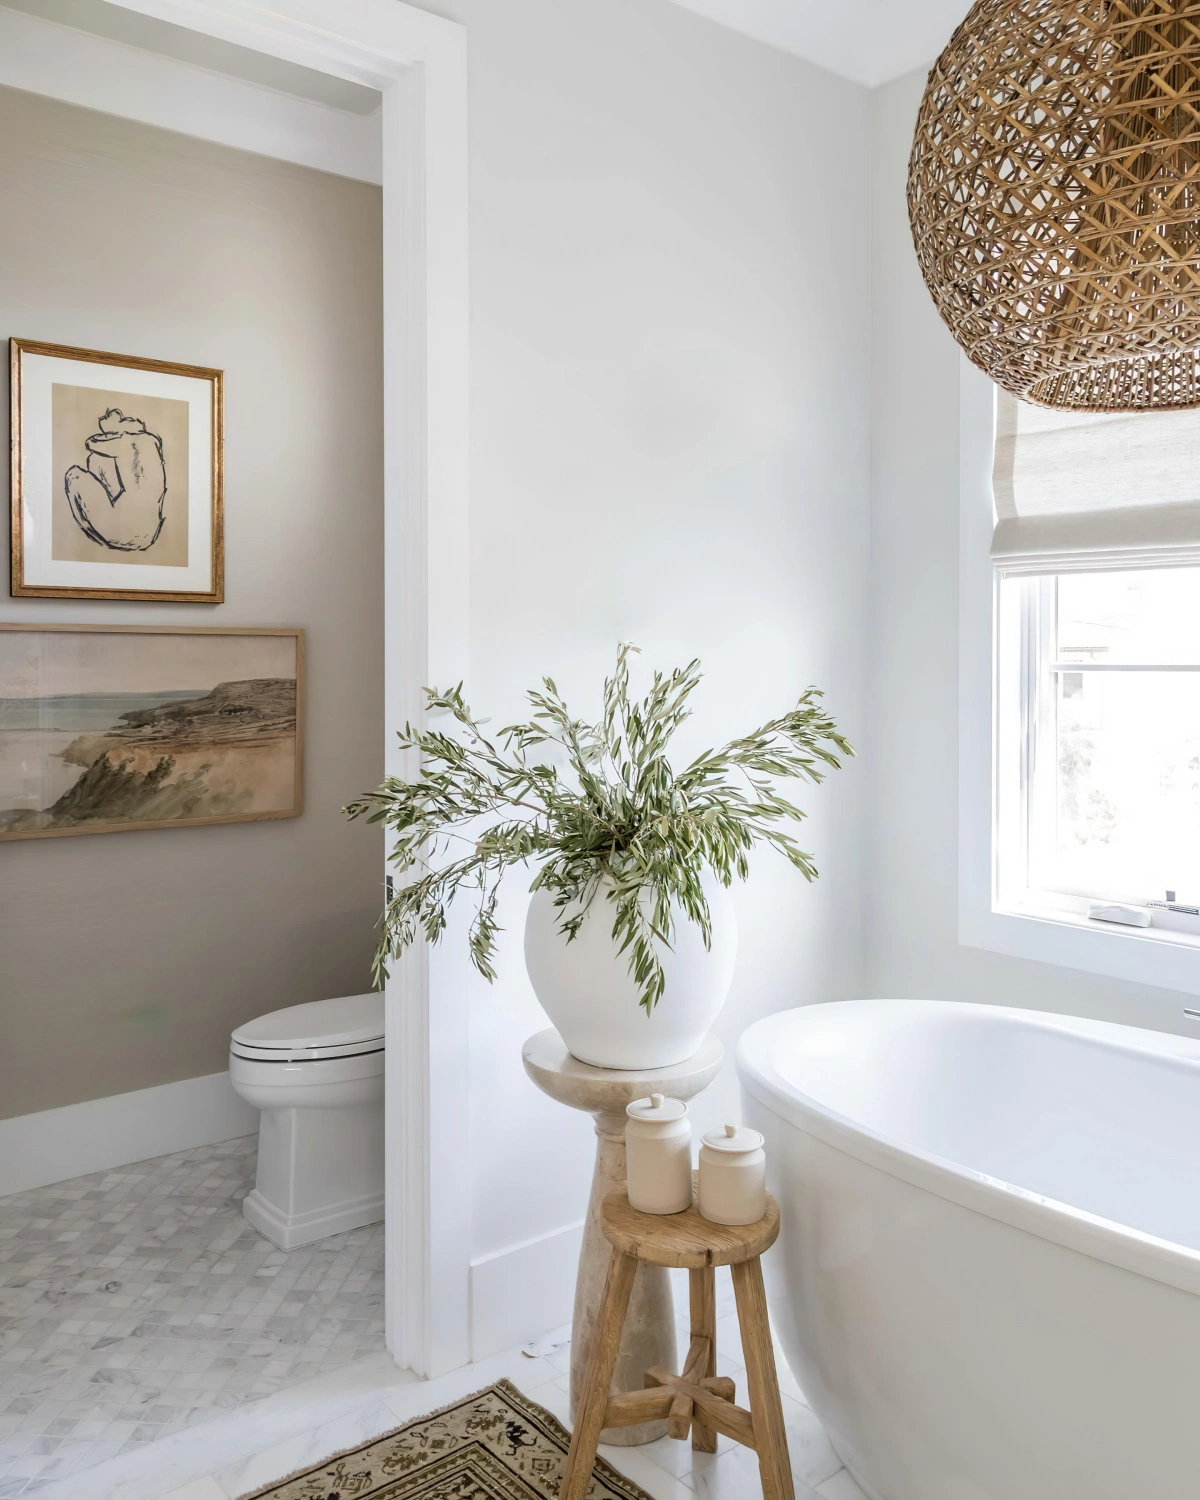 couleurs neutres peinture blanche vase meubles bois tapis salle de bain